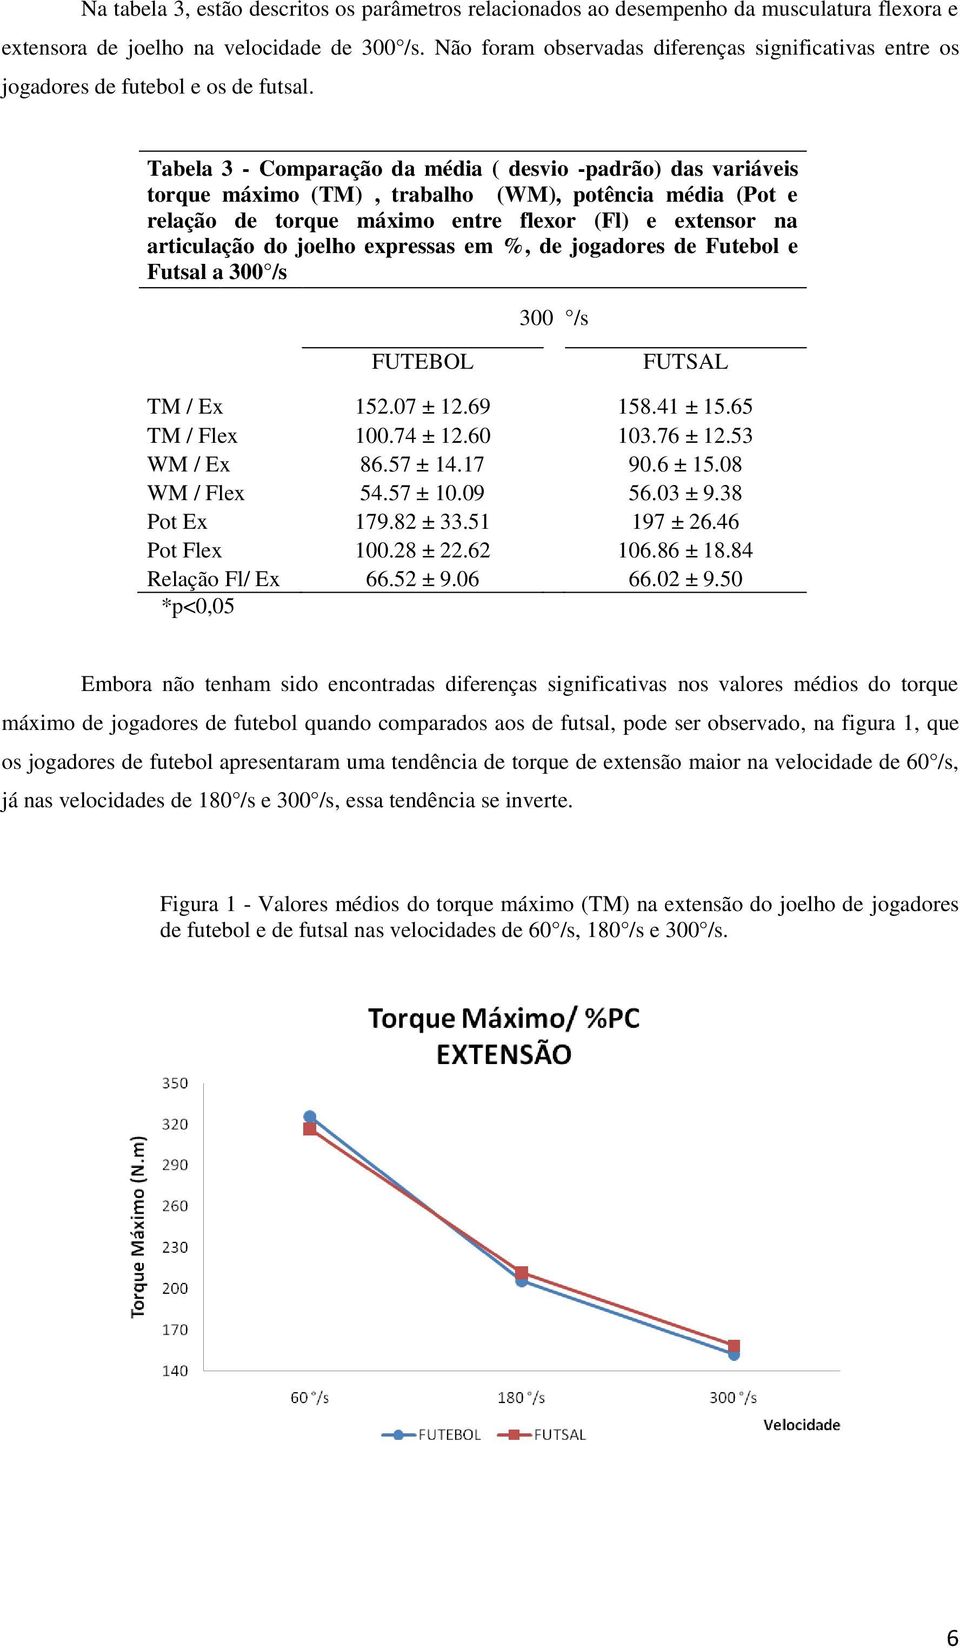 Tabela 3 - Comparação da média ( desvio -padrão) das variáveis torque máximo (TM), trabalho (WM), potência média (Pot e relação de torque máximo entre flexor (Fl) e extensor na articulação do joelho